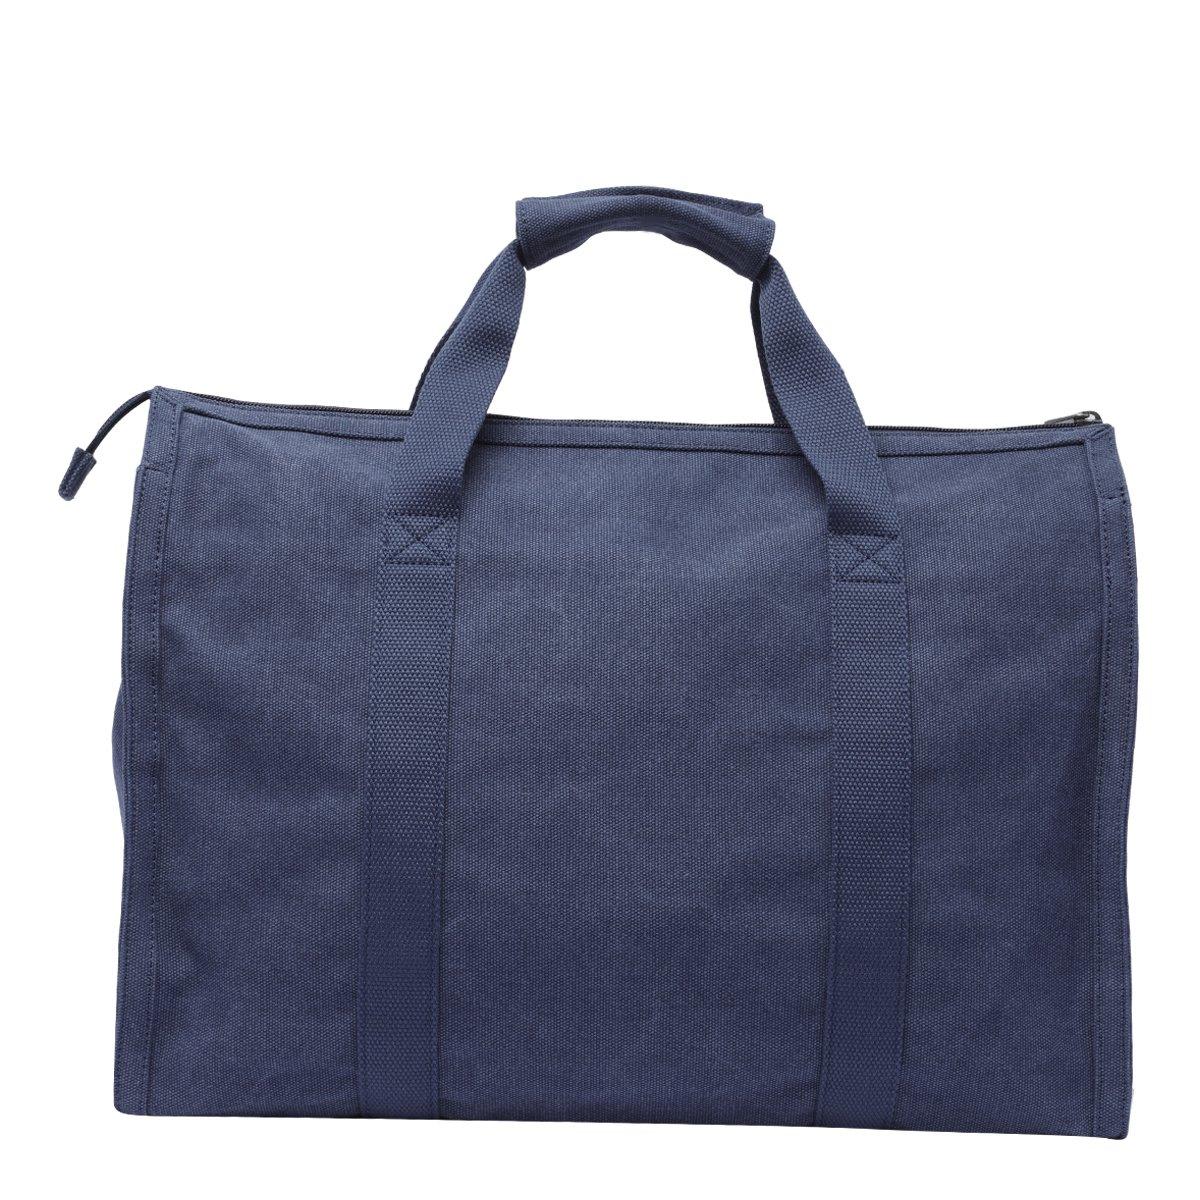 Shop Apc Logo Printed Tote Bag In Blue